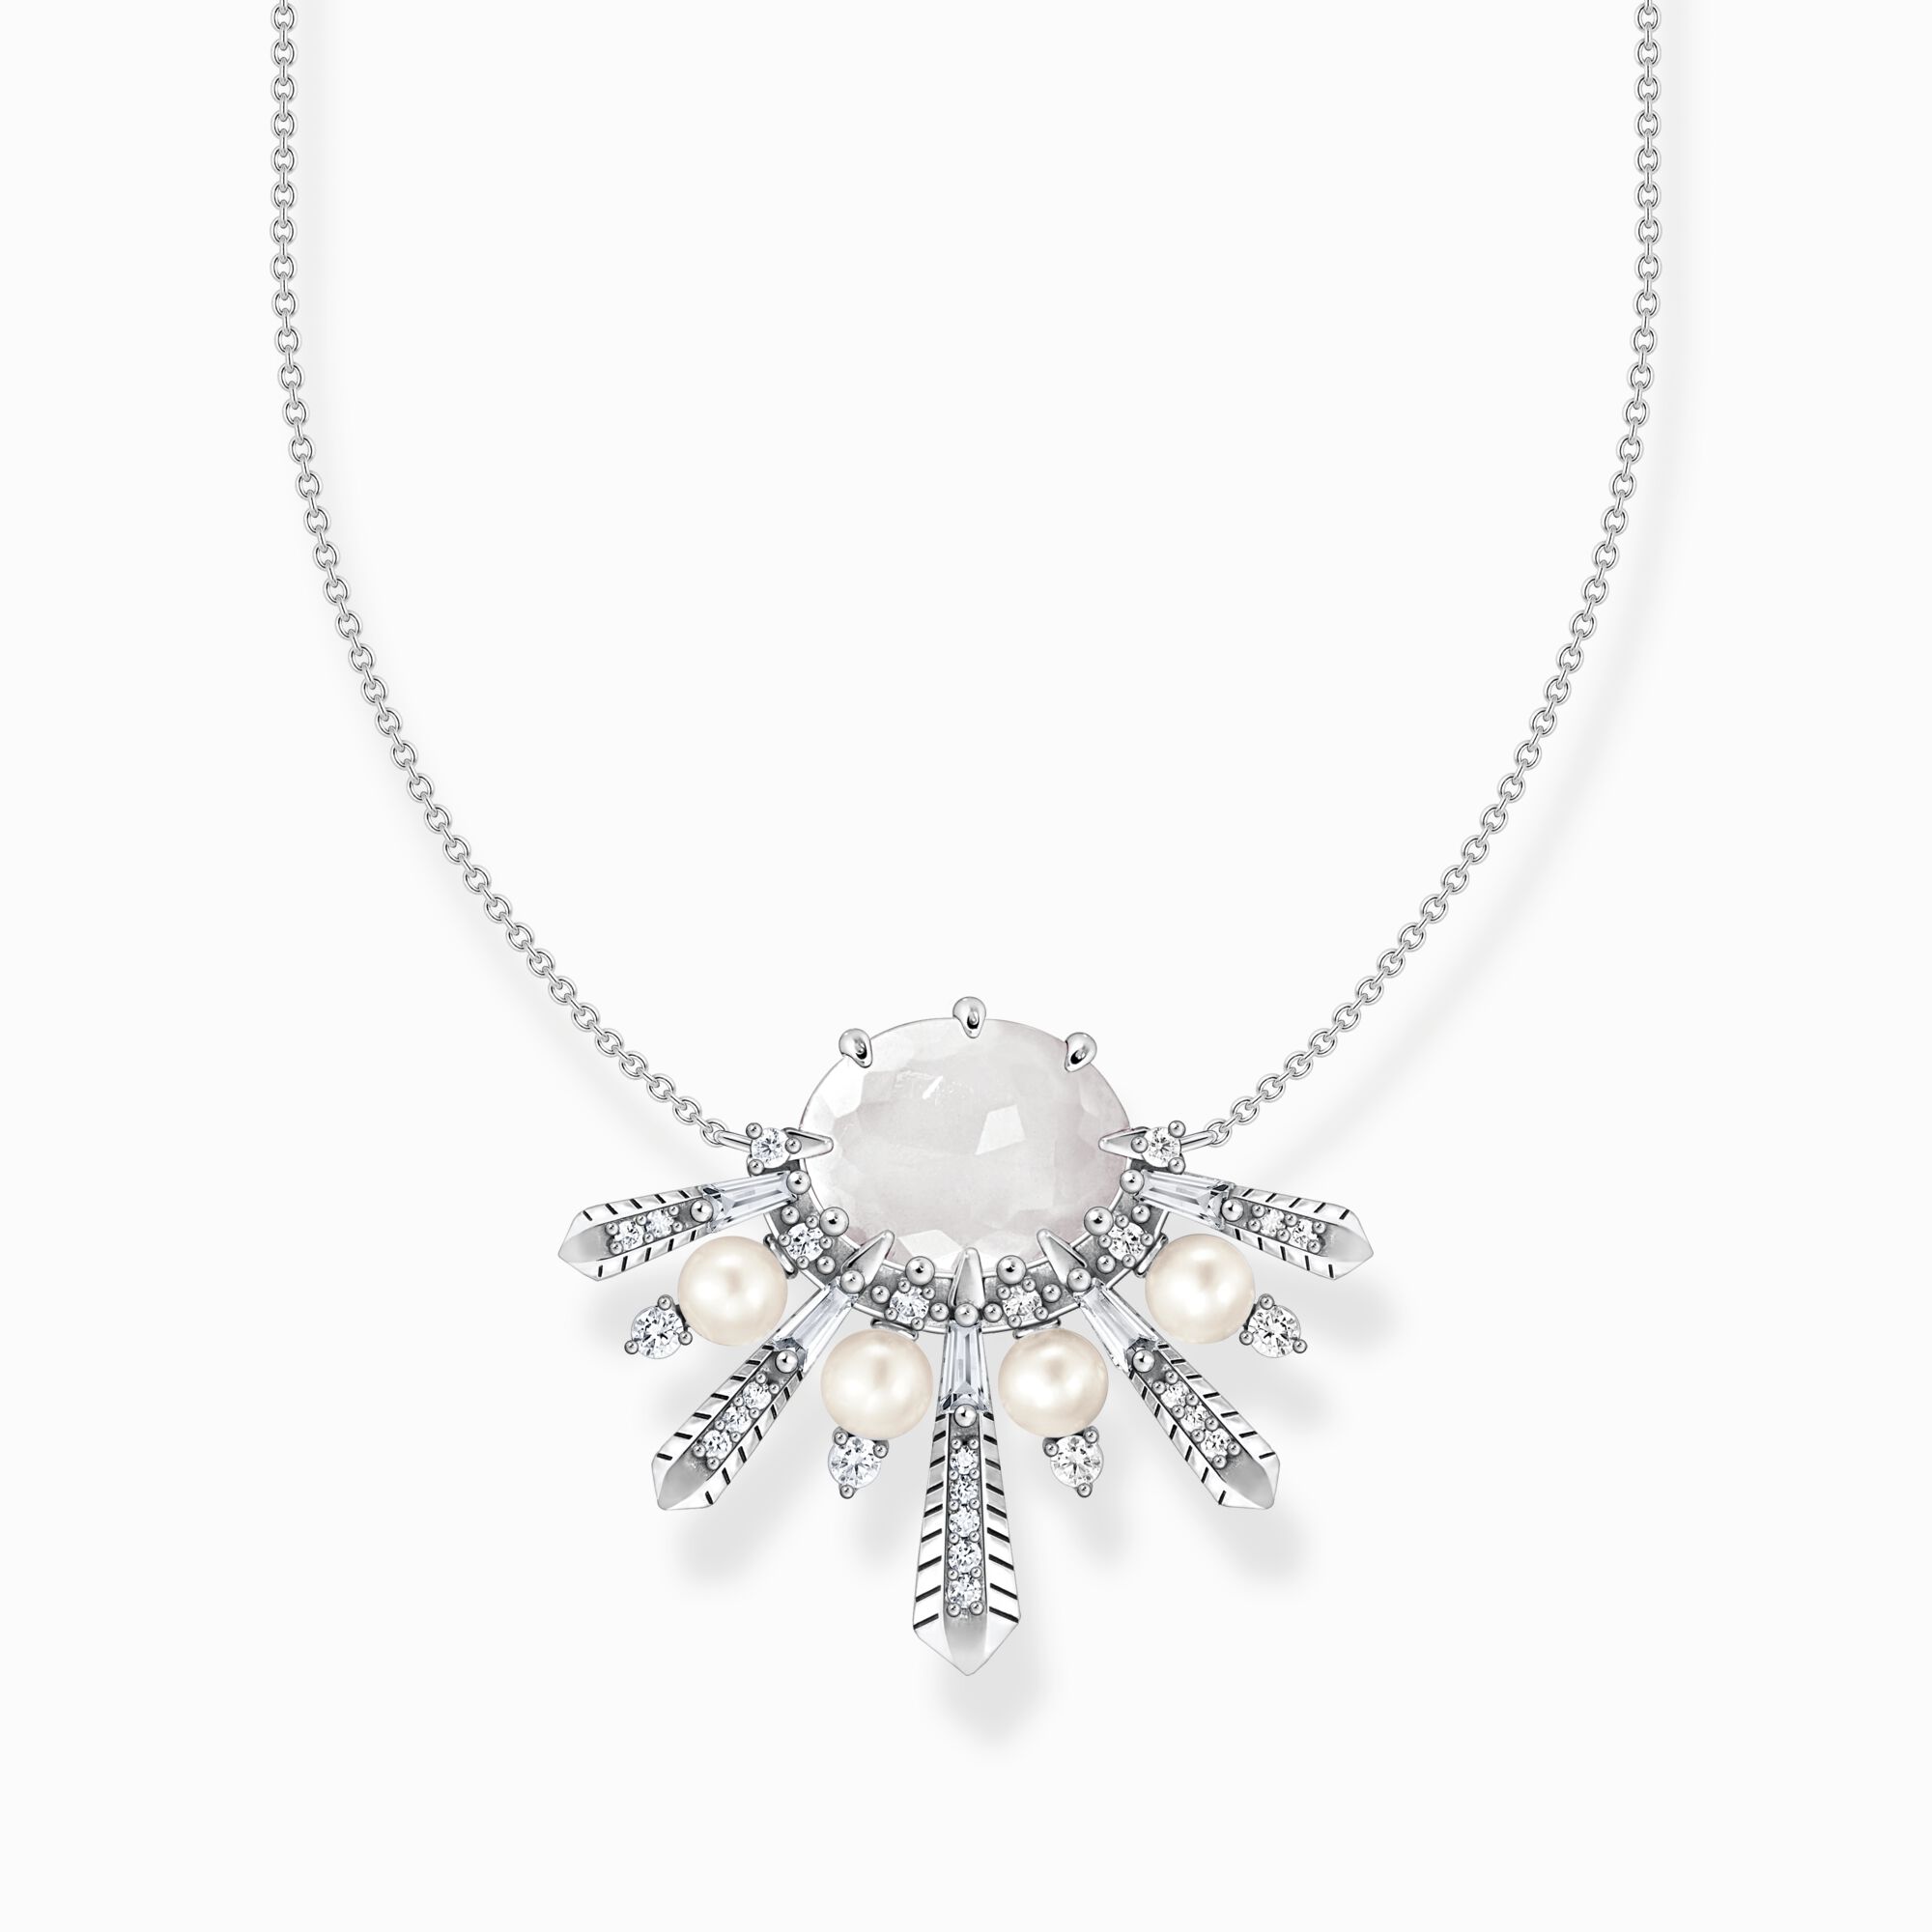 Collier für Damen: Silber, THOMAS und Perlen Steine | SABO